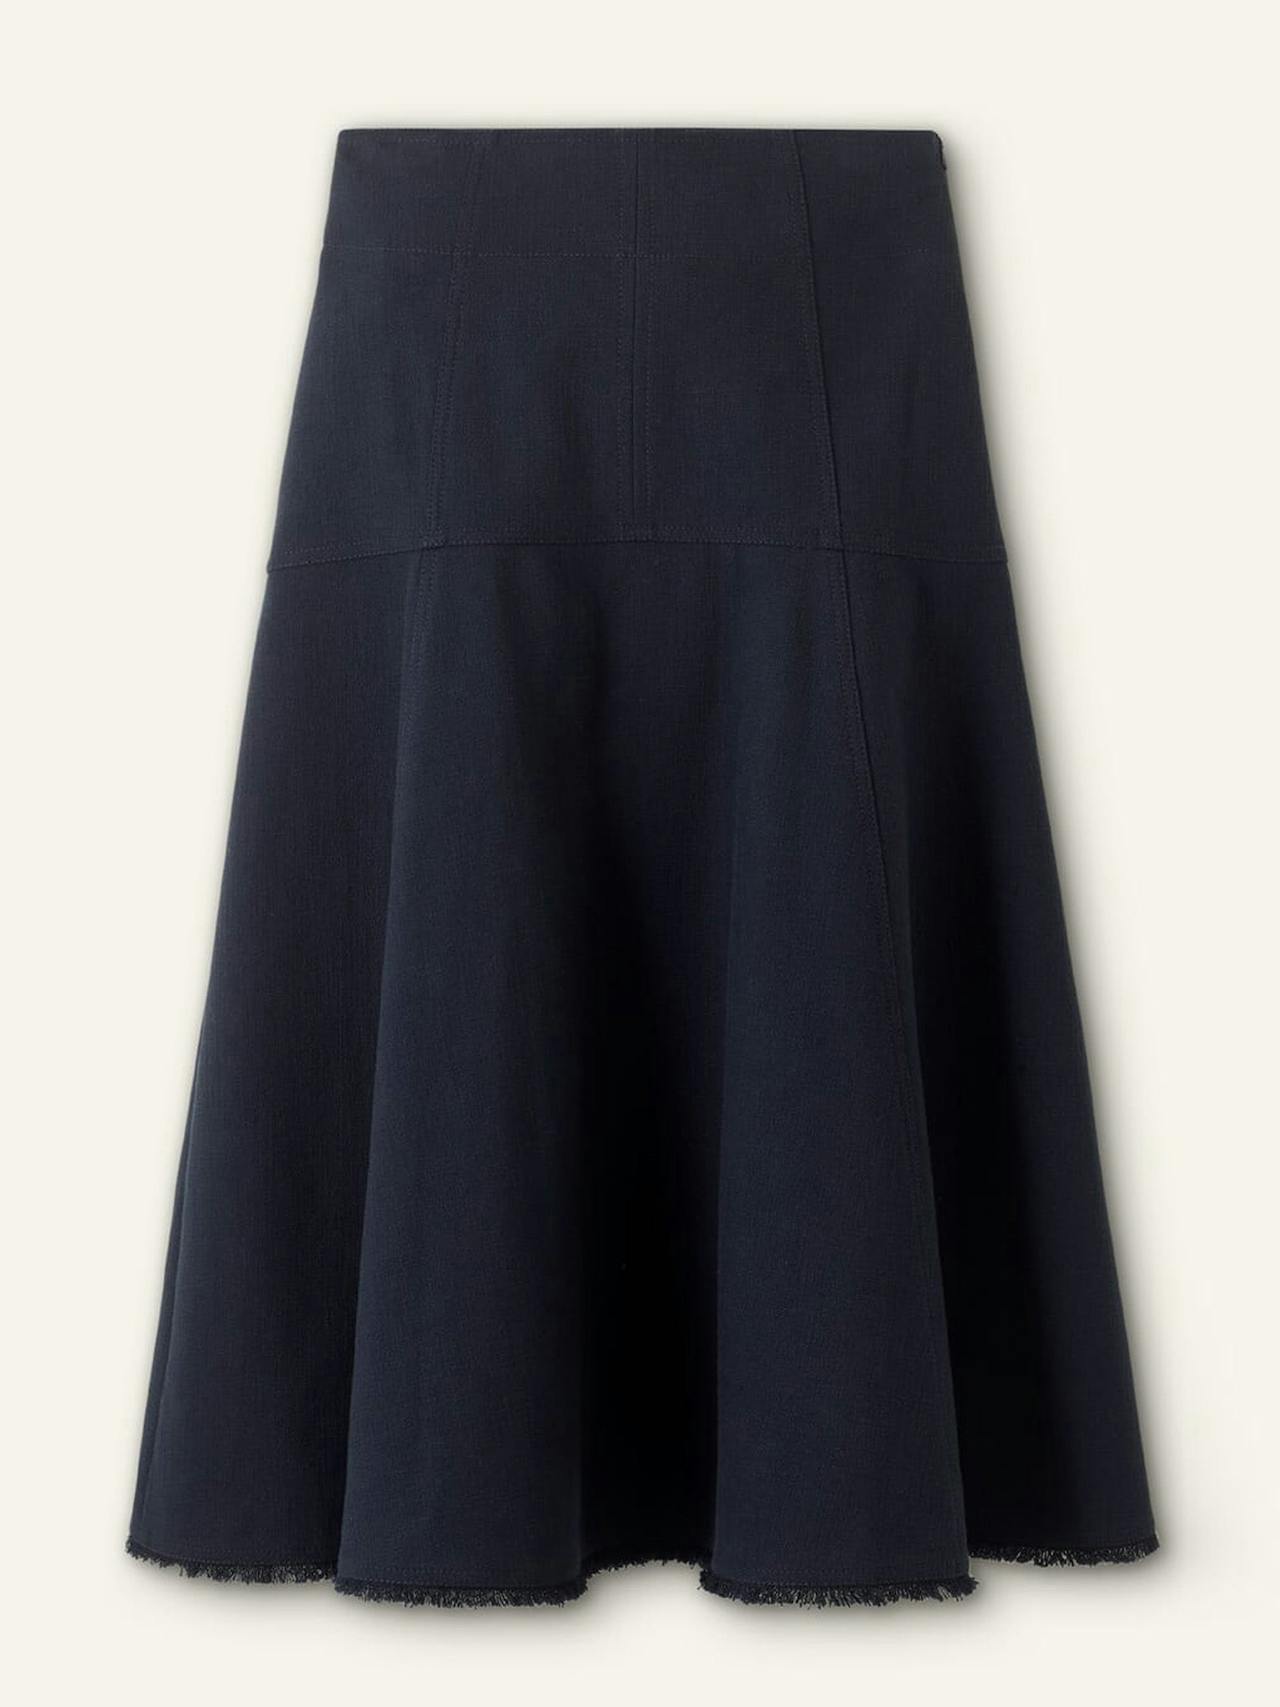 Textured cotton-blend skirt